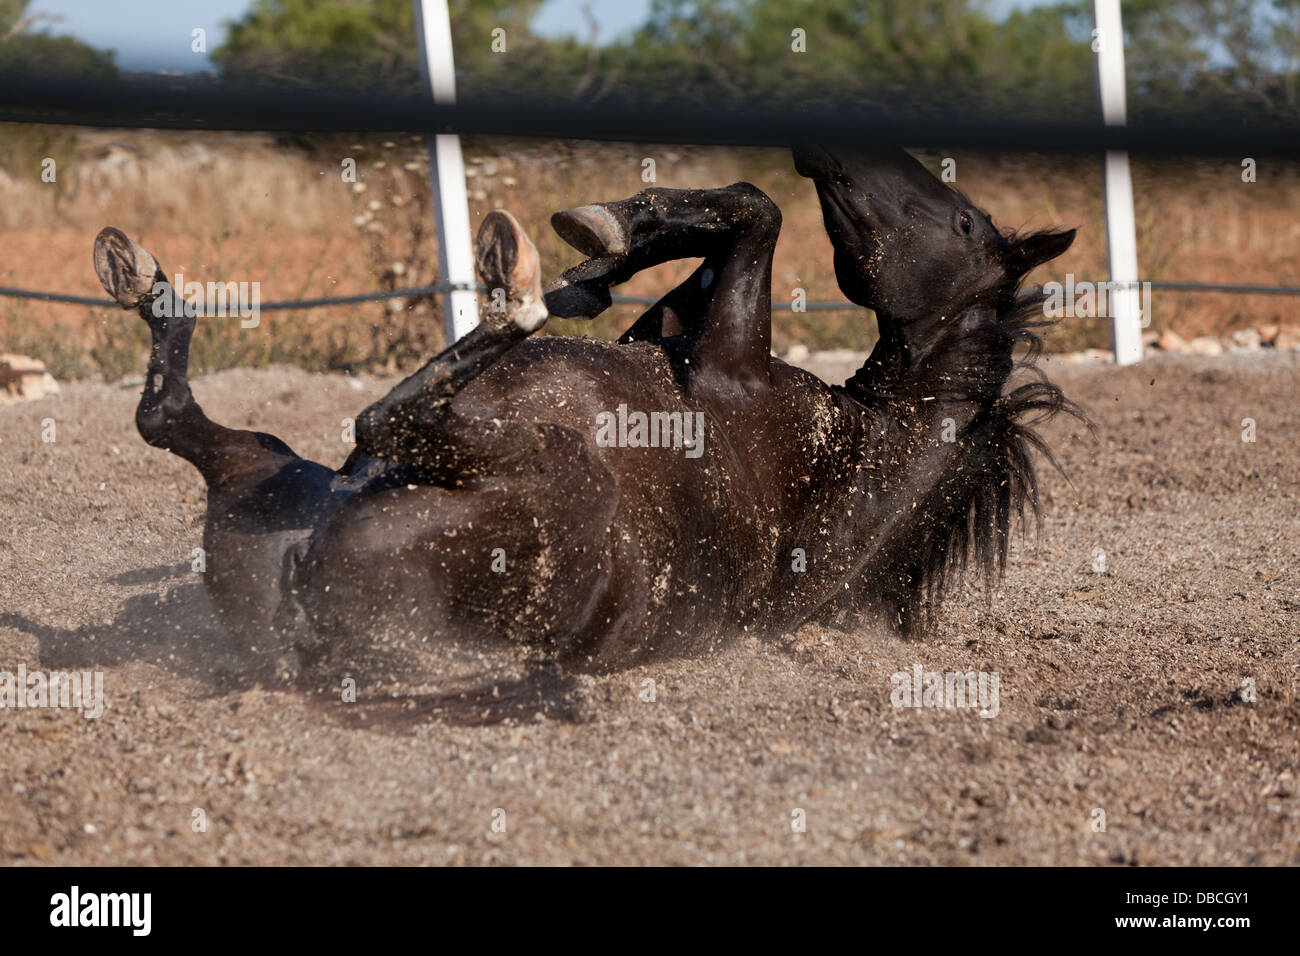 caballo de pura raza menorquina prm horse outdoor rolling on floor Stock Photo